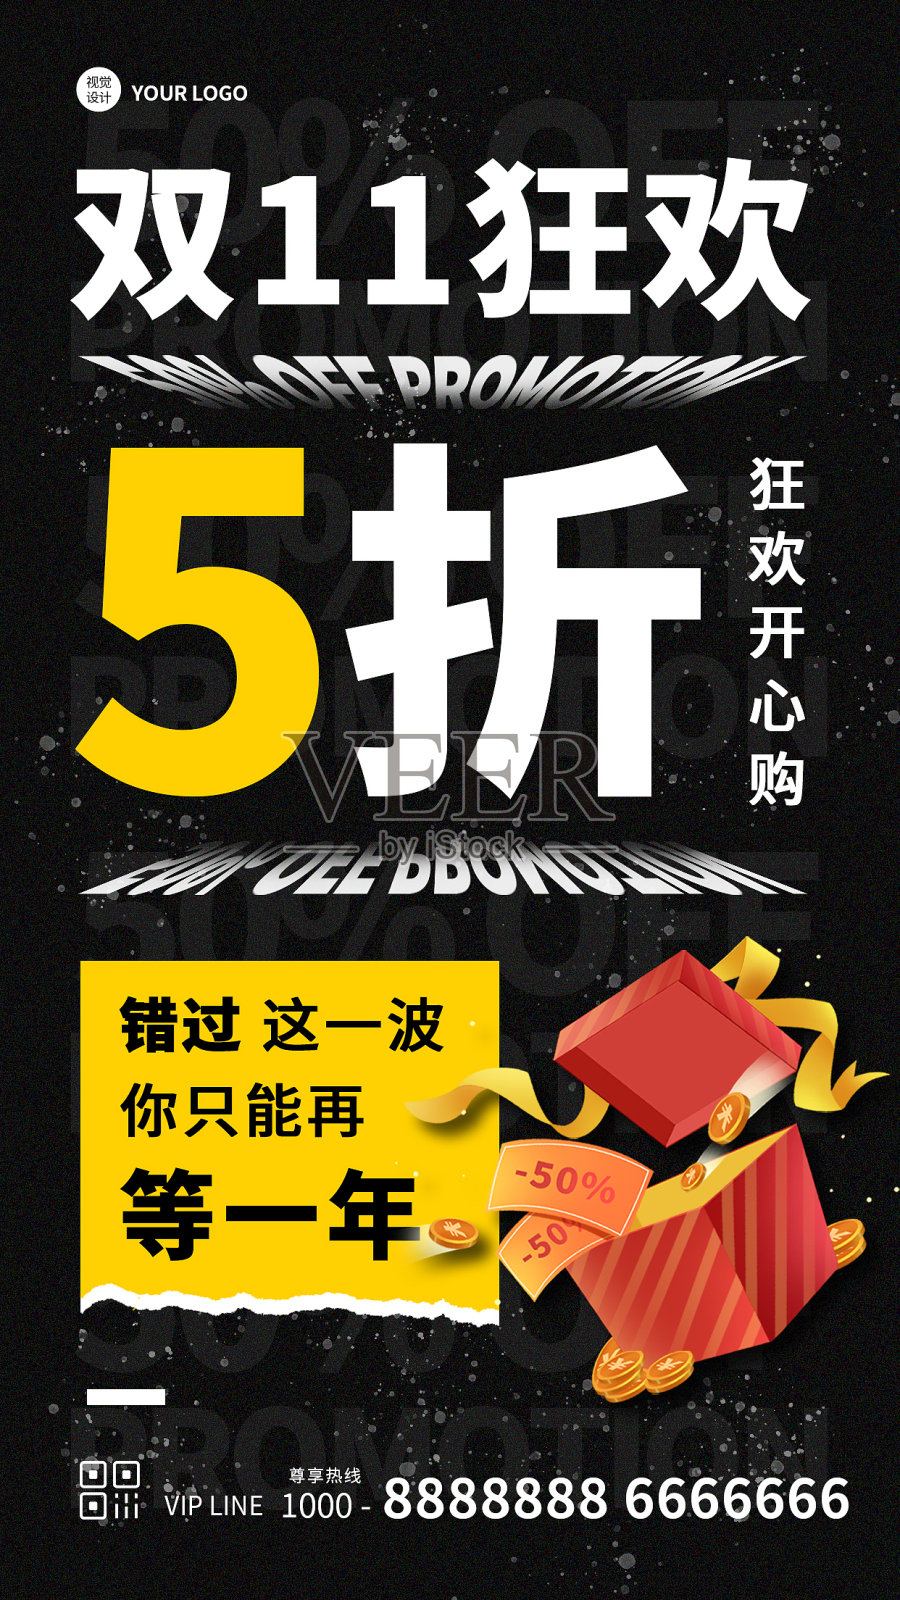 创意炫酷大气黑色双十一促销宣传活动手机海报设计模板素材